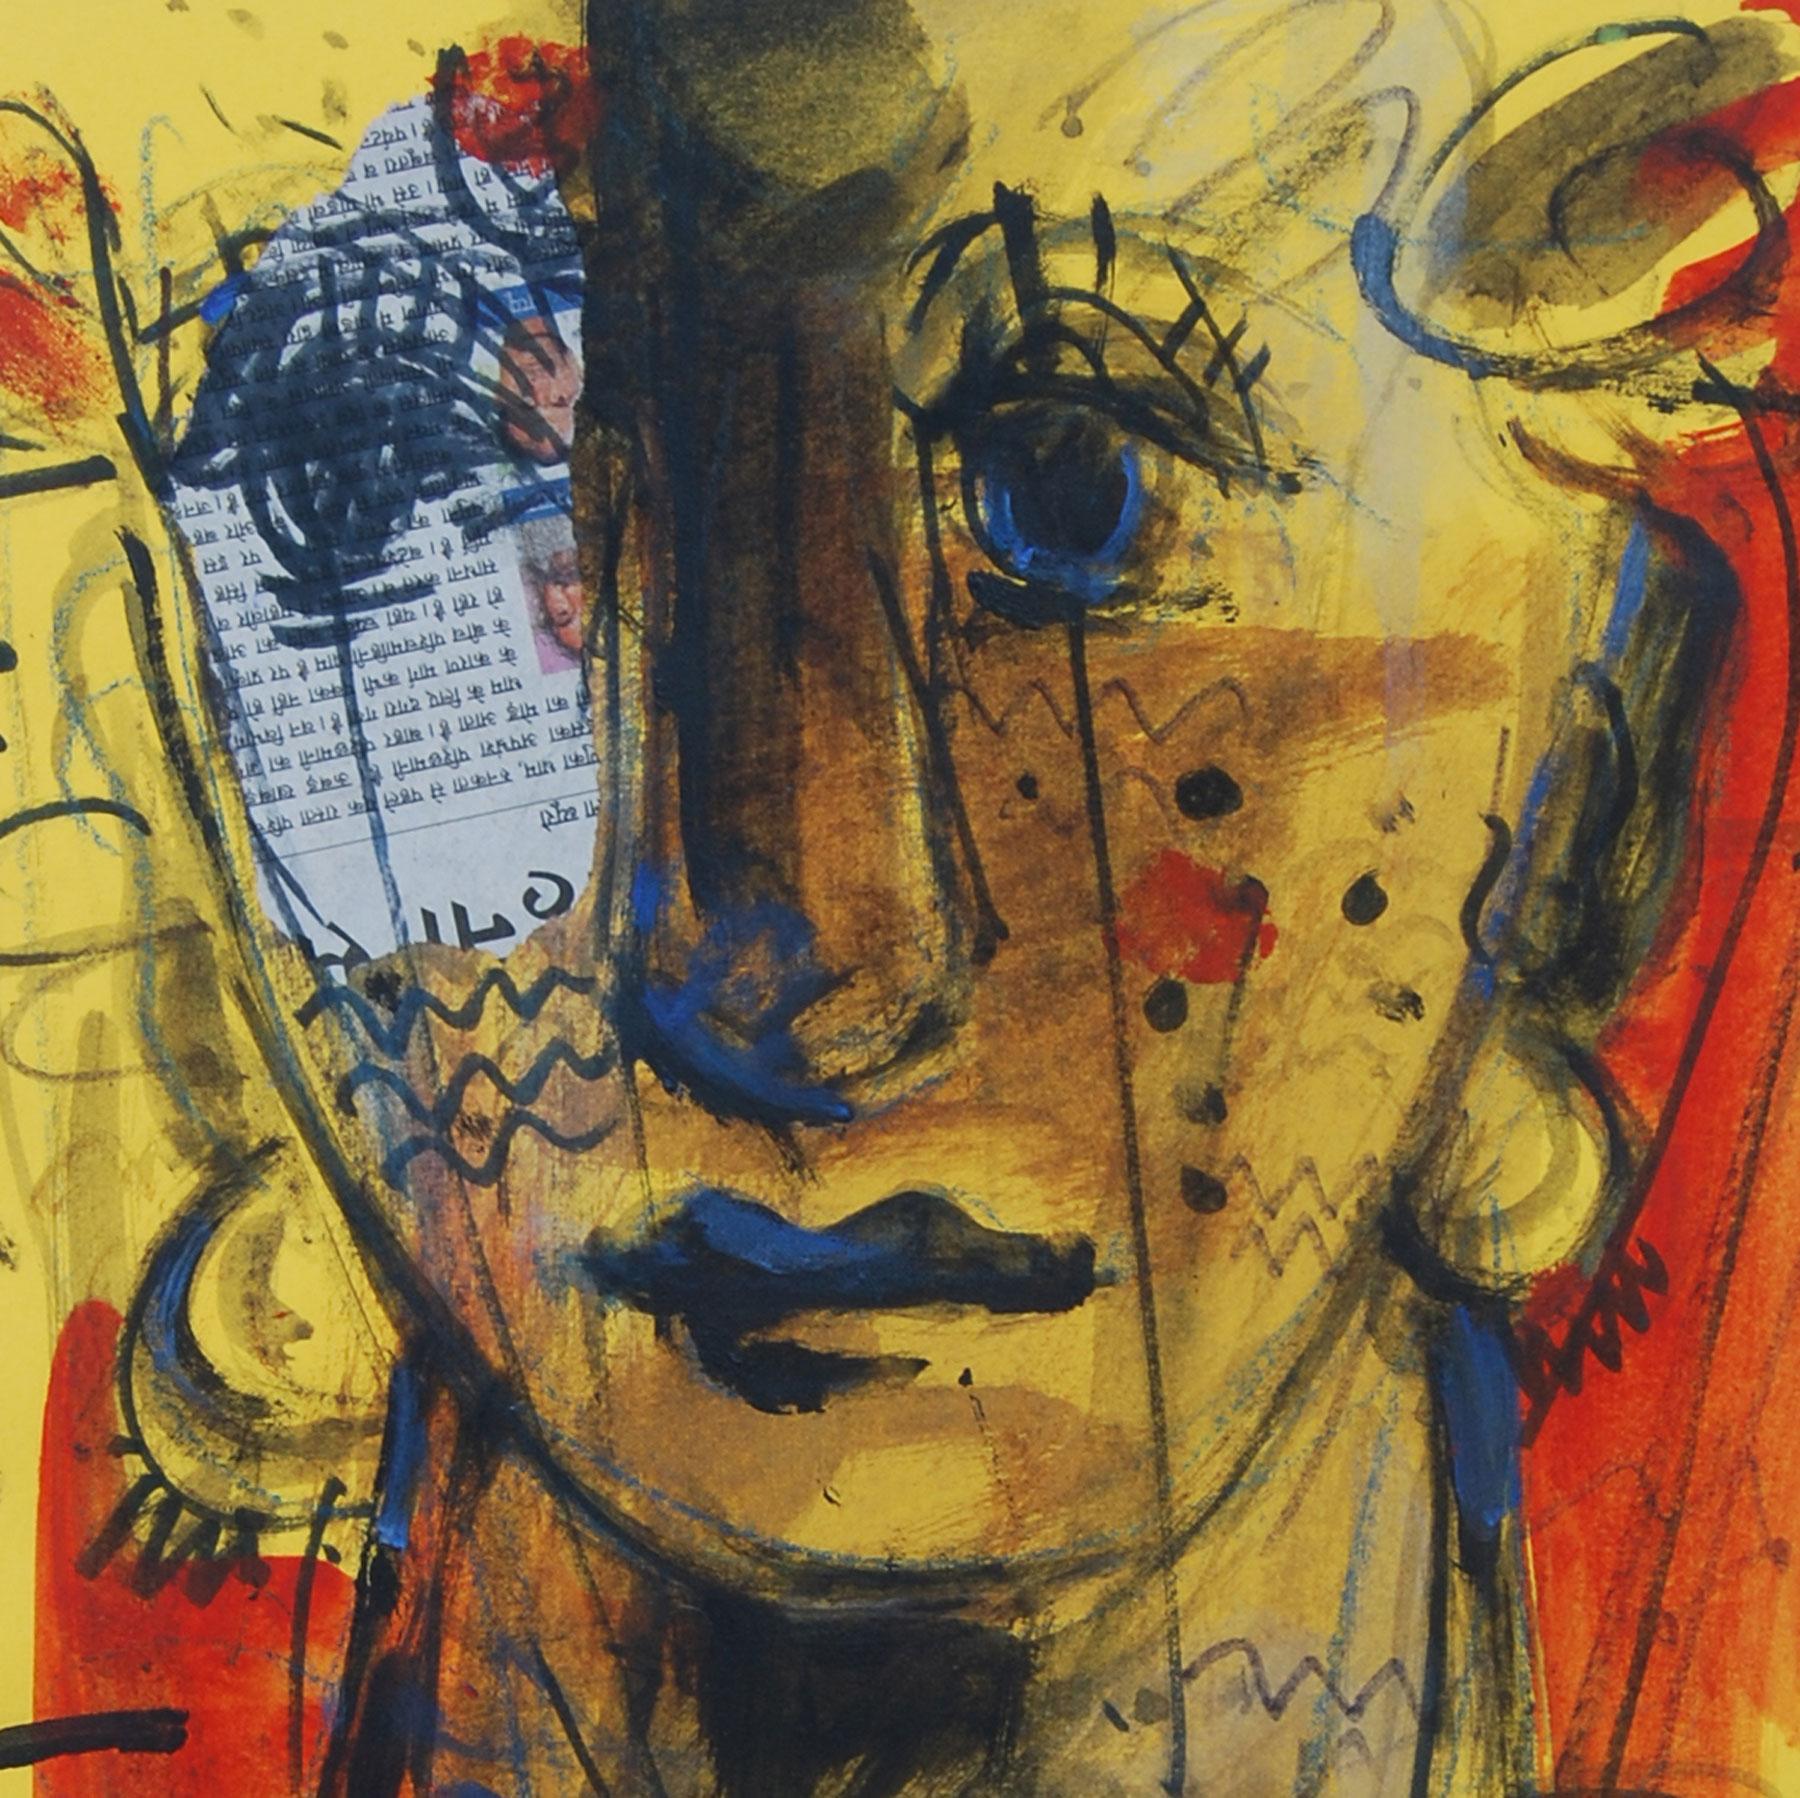 Facetten, Ausdruck, Mood, Darstellung von Calmness, Mixed Media, Indian Artist, „In Stock“ – Painting von Sekhar Kar